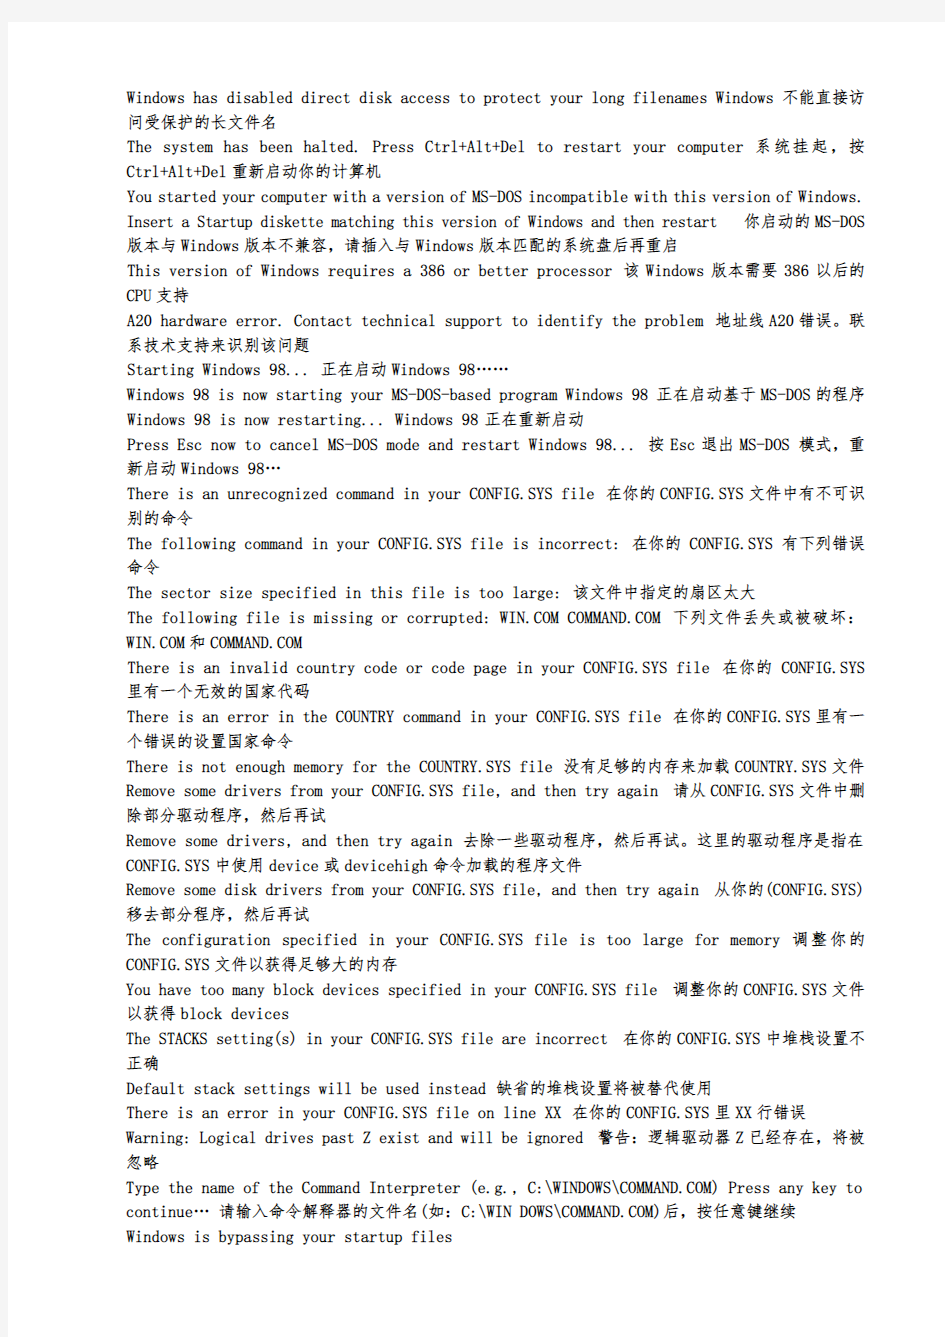 电脑各种错误信息的中文意思